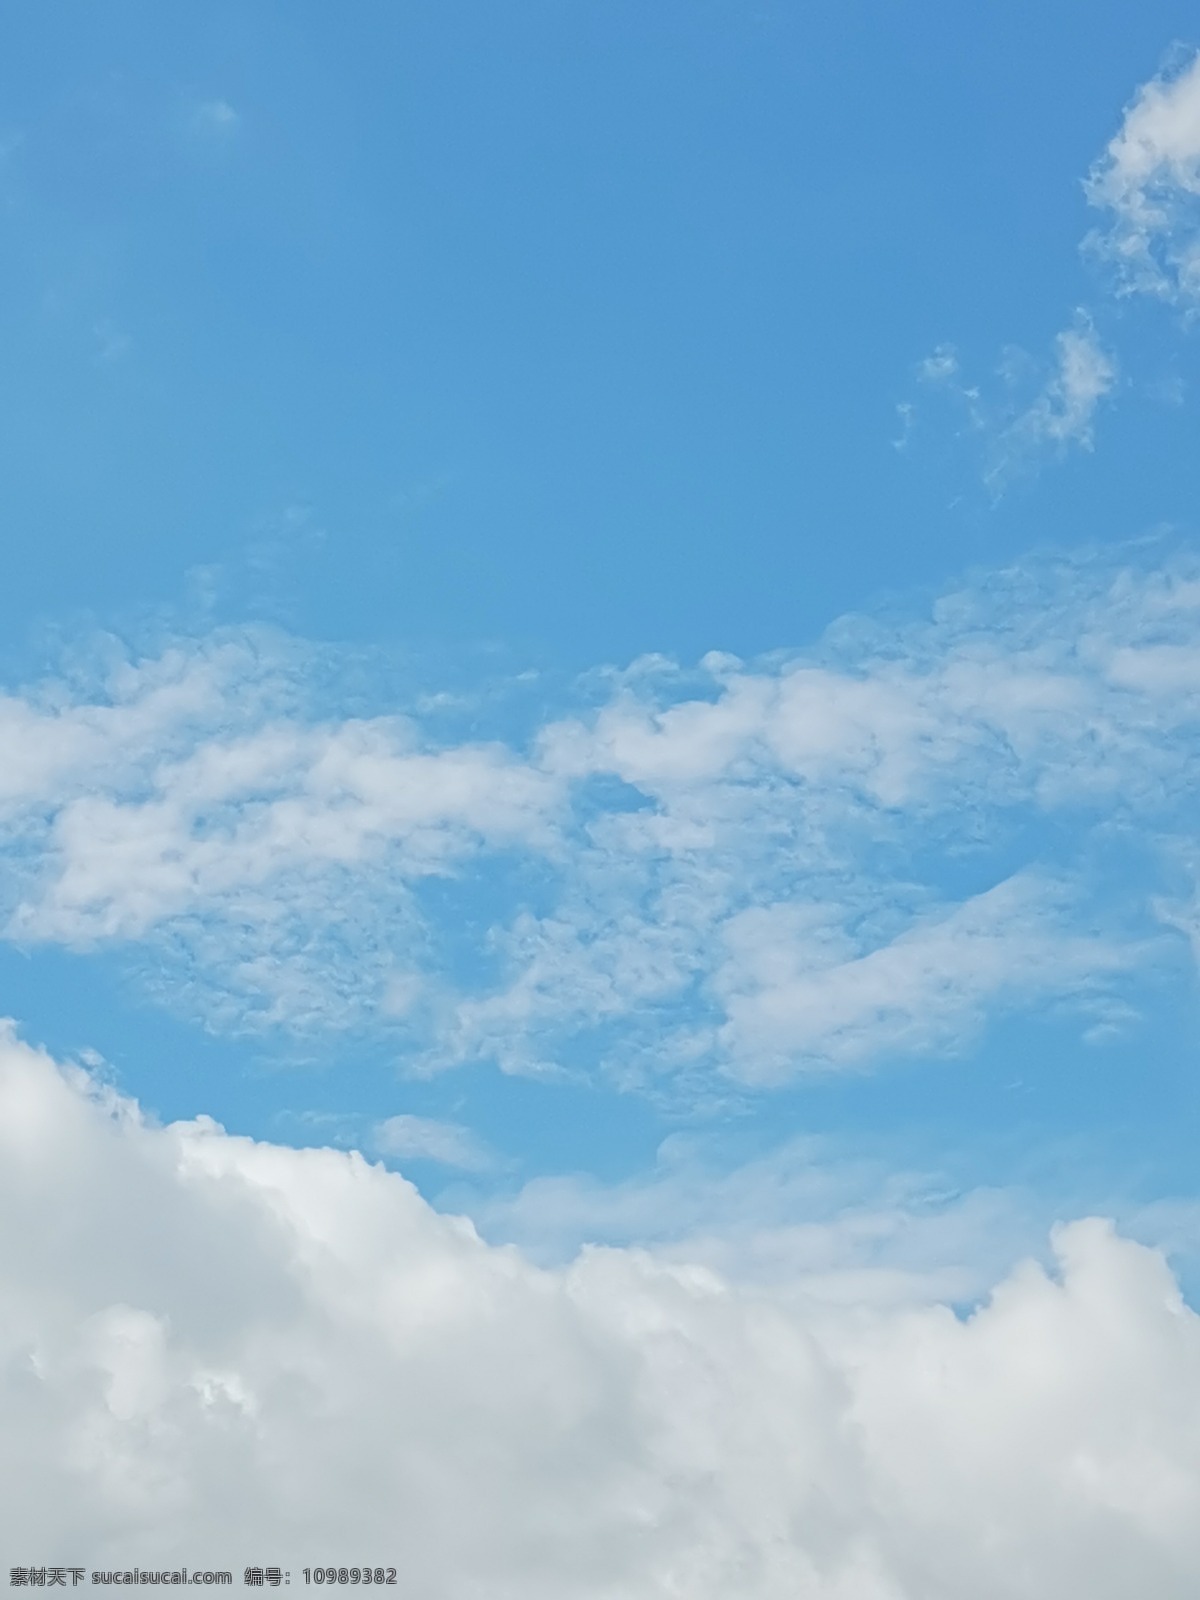 蓝天白云 手机摄影 蓝天 白云 卡片 贺卡 自然 背景 天空 自然景观 自然风景